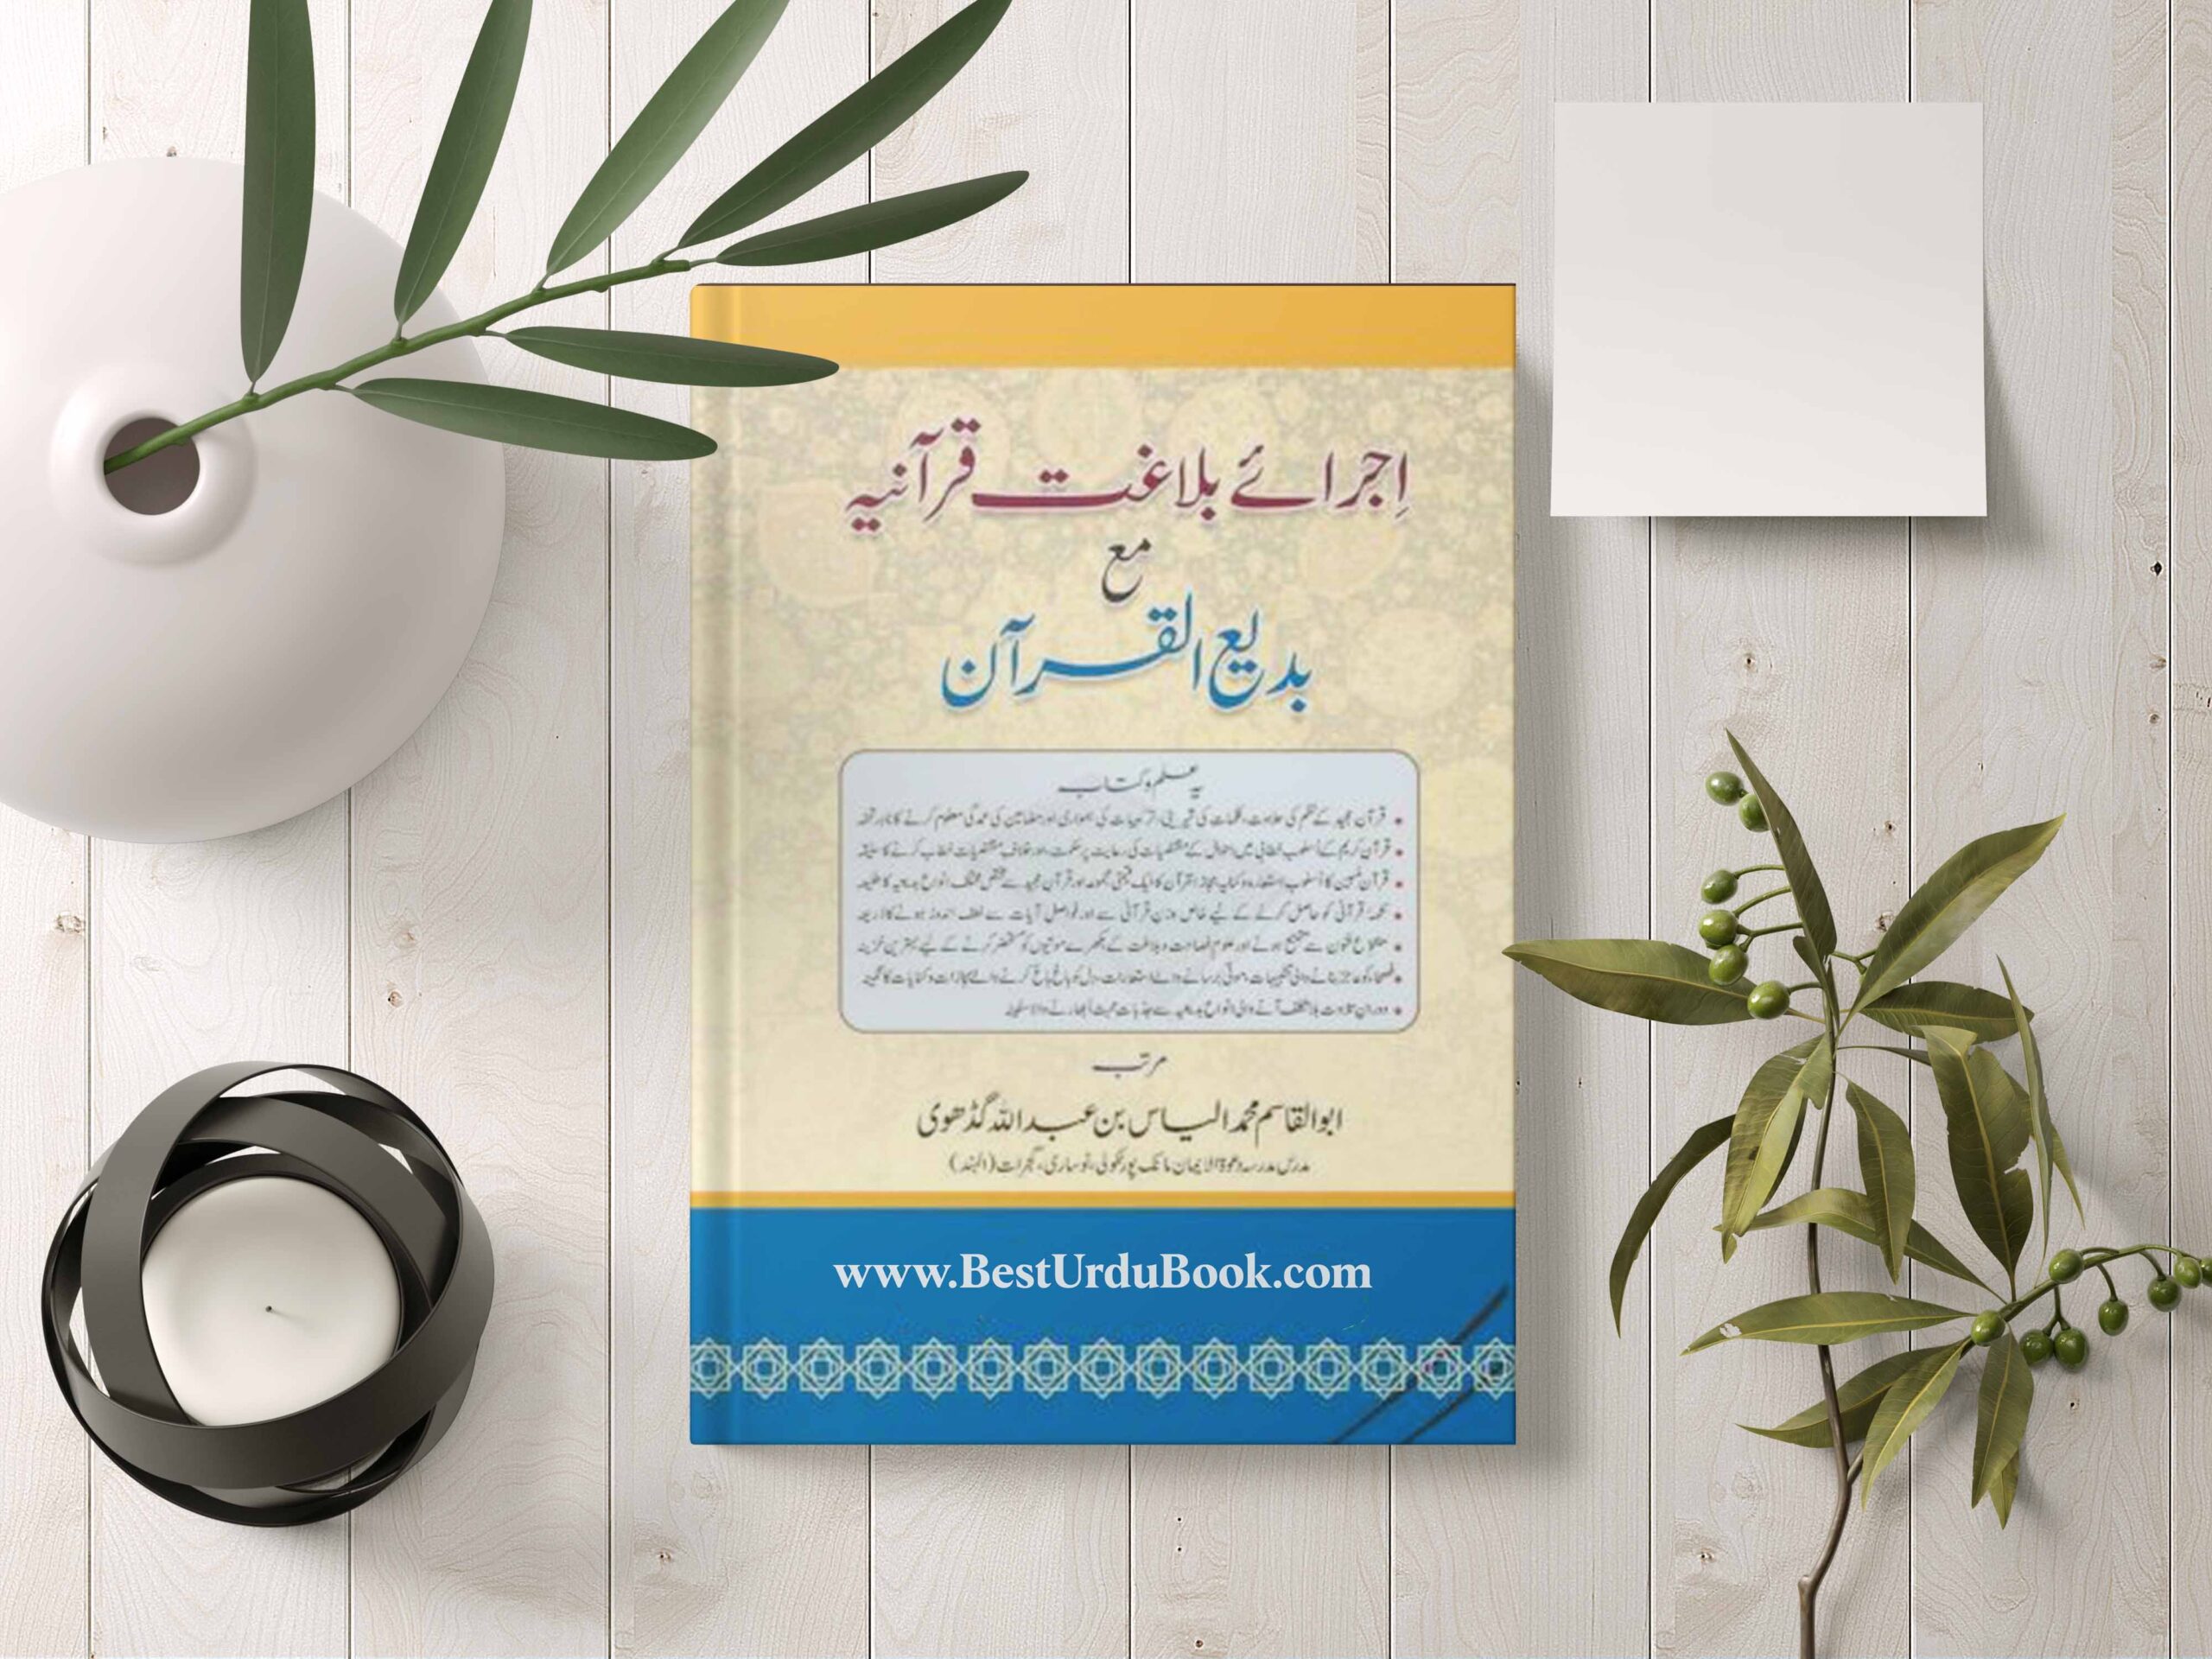 Ijra e Balaghat e Qurania Book Download In Urdu & pdf format